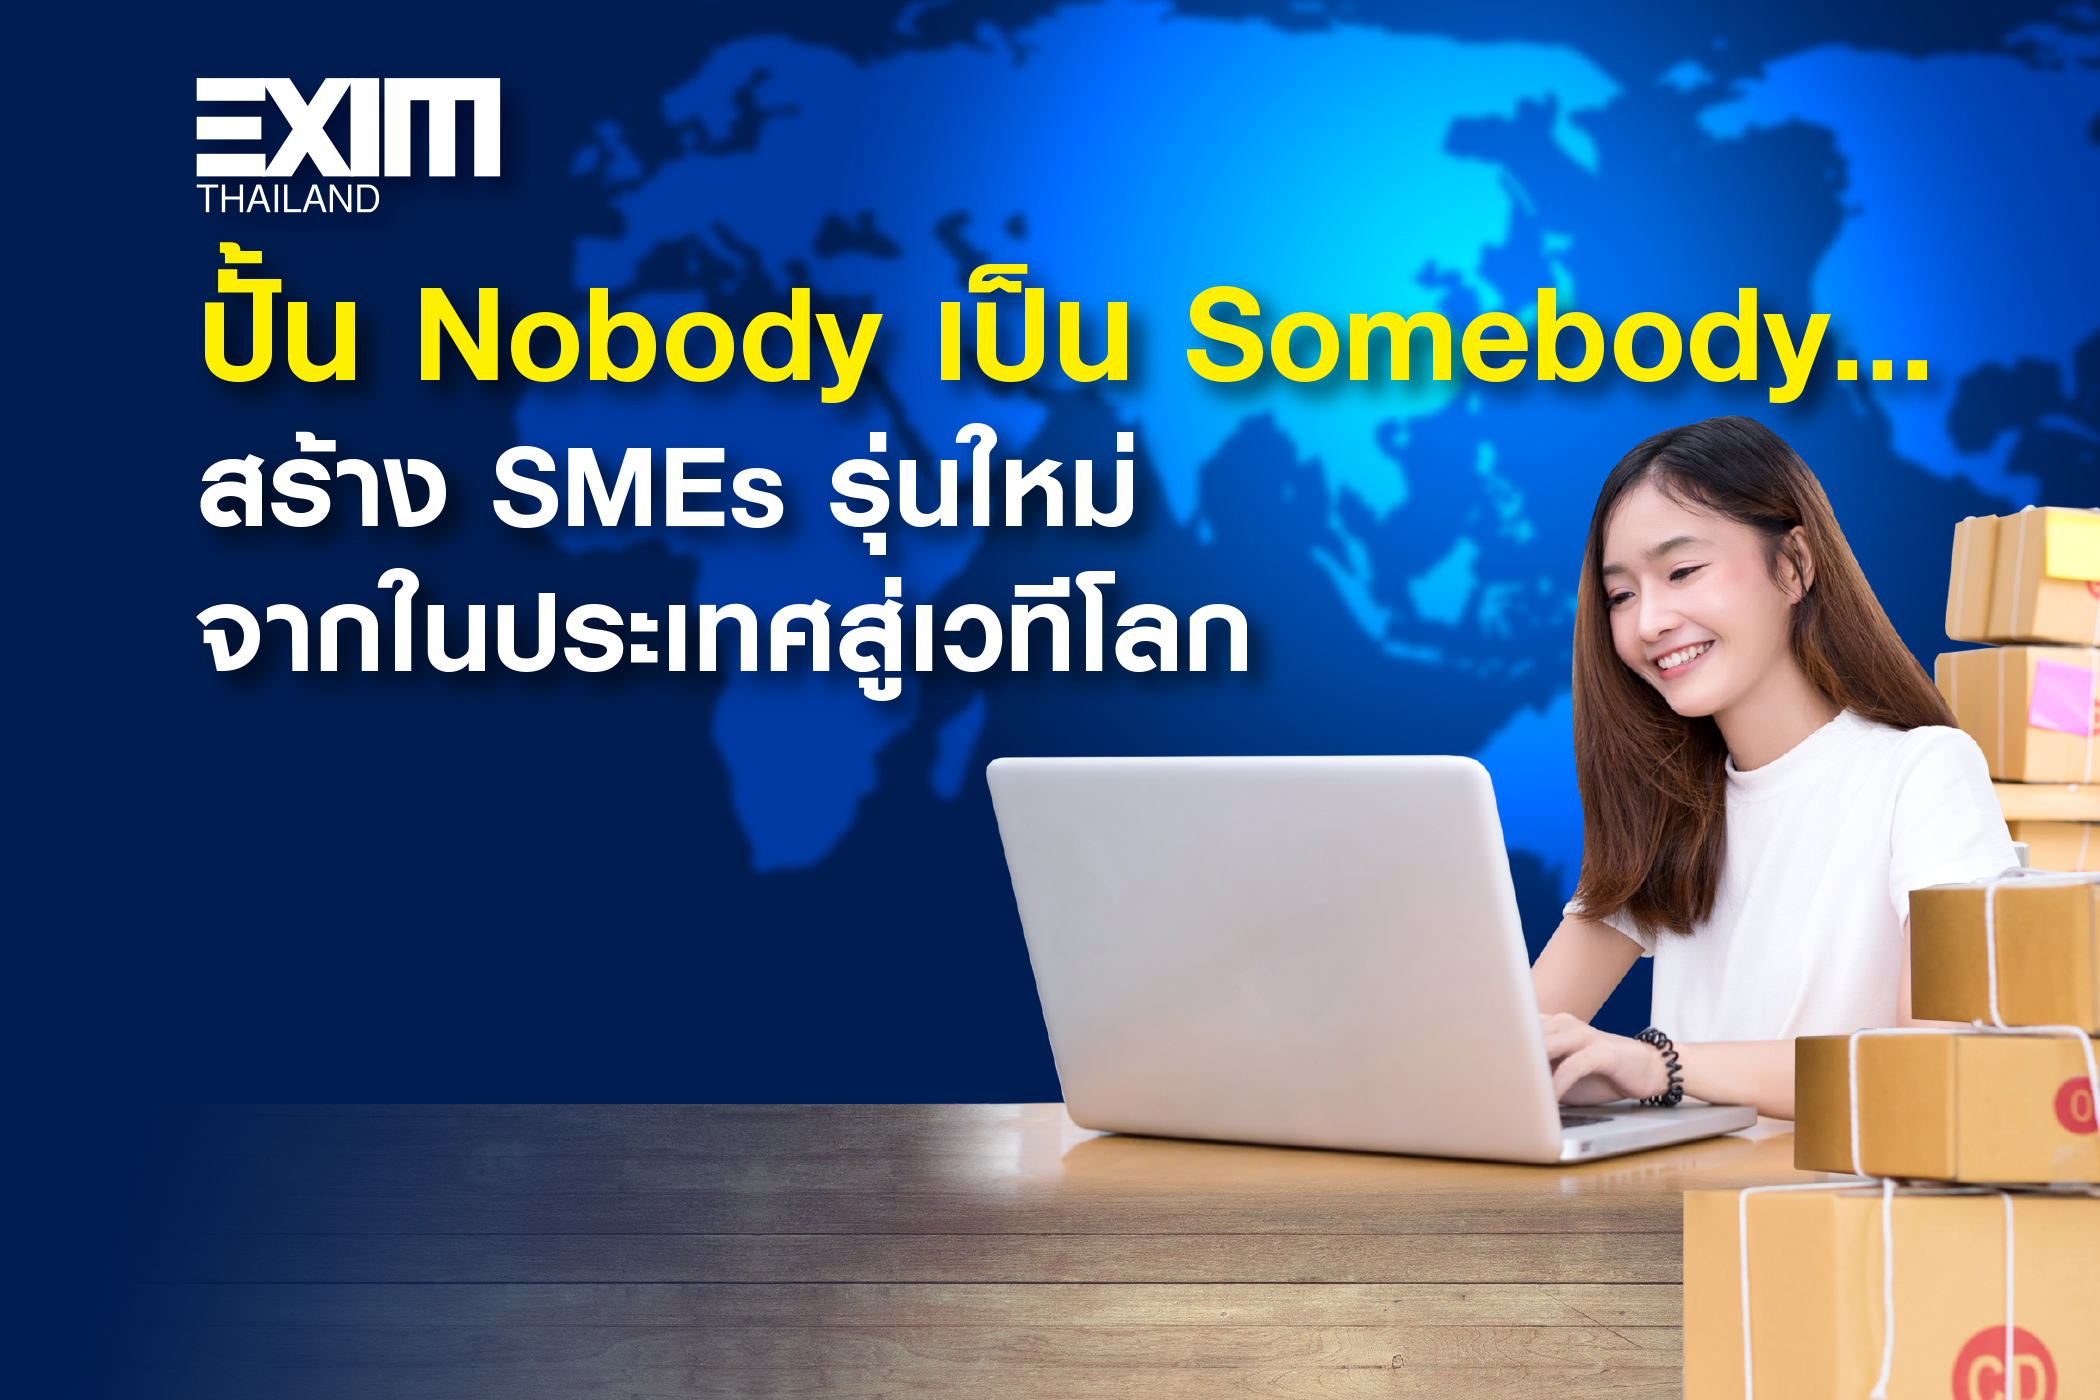 ปั้น Nobody เป็น Somebody...สร้าง SMEs รุ่นใหม่จากในประเทศสู่เวทีโลก